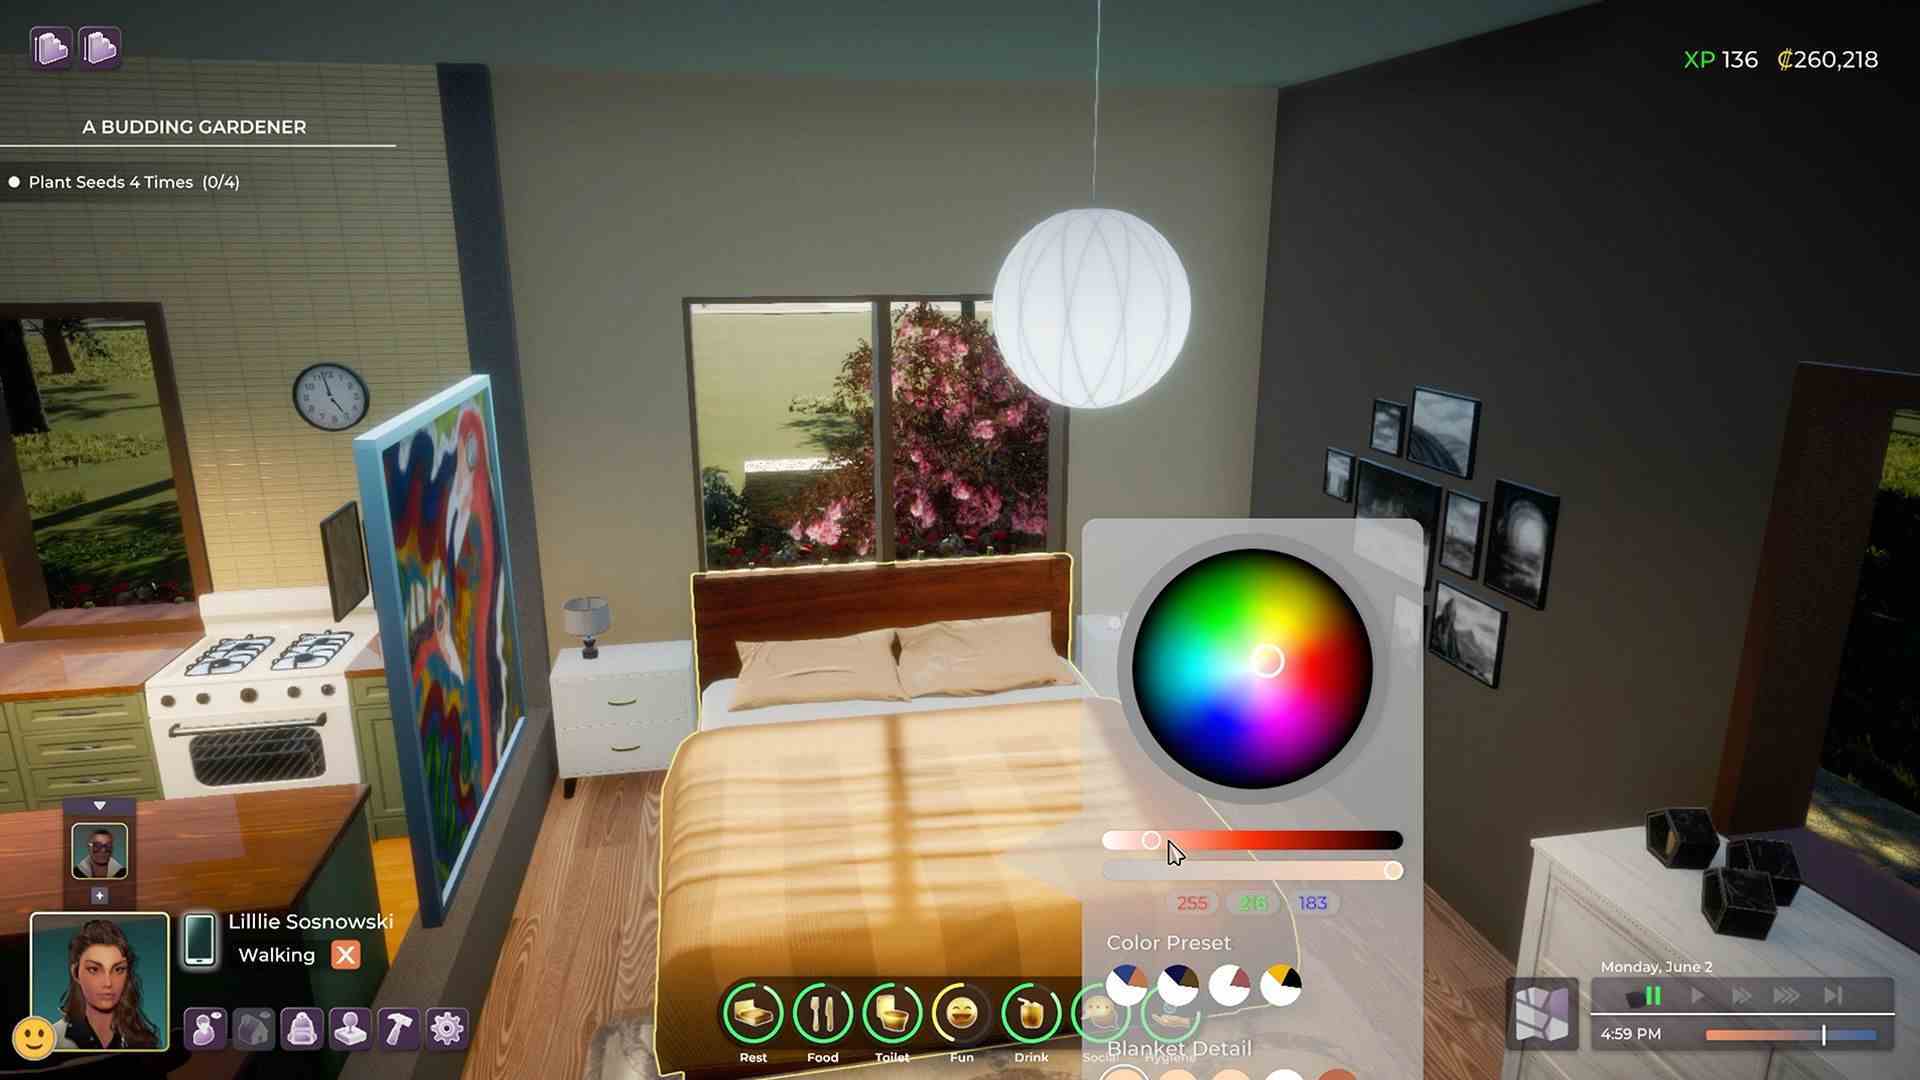 Life by You çıkış tarihi: Paradox'un yatak odası mobilyalarını özelleştirmek için bir renk çarkı içeren yakında çıkacak olan yaşam simülasyon oyunu Life by You'da bekleyebileceğimiz tasarım araçları.